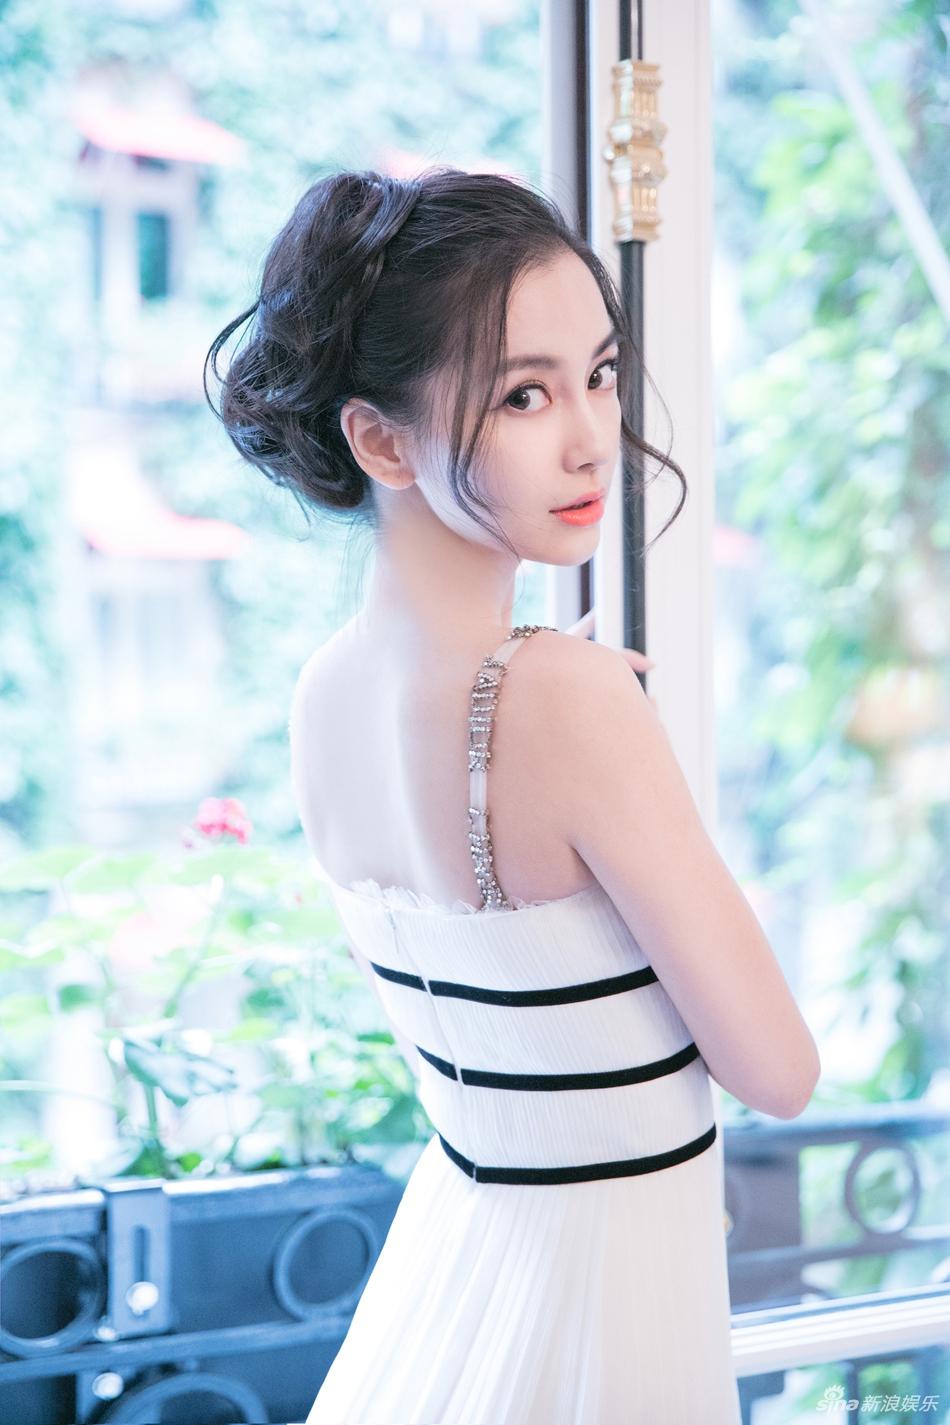 Triệu Lệ Dĩnh vượt mặt Phạm Băng Băng, trở thành ngôi sao quảng cáo hot nhất 2017-8